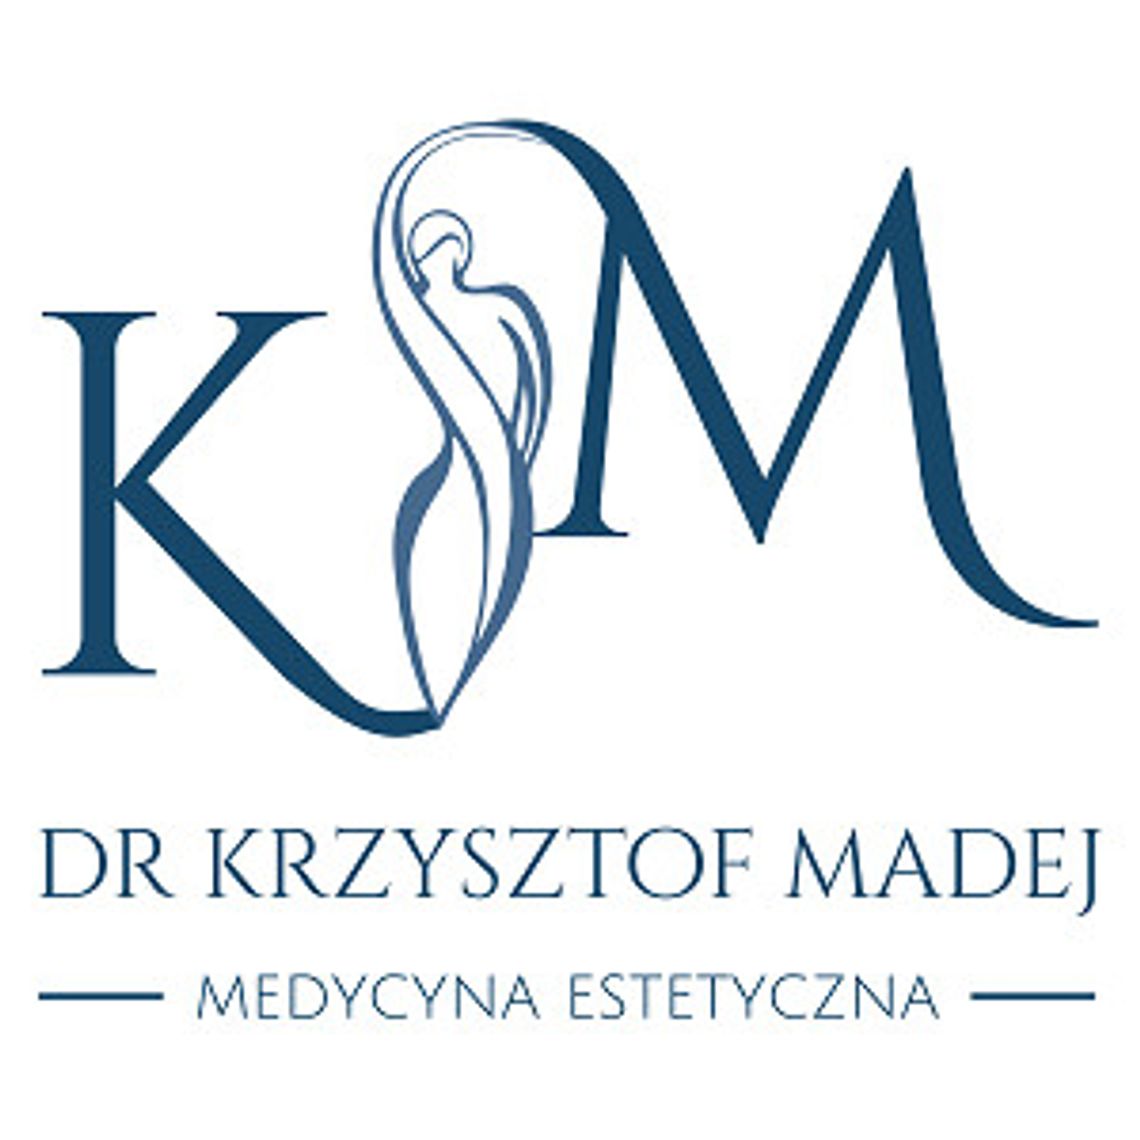 Lekarz medycyny estetycznej - Dr Krzysztof Madej 